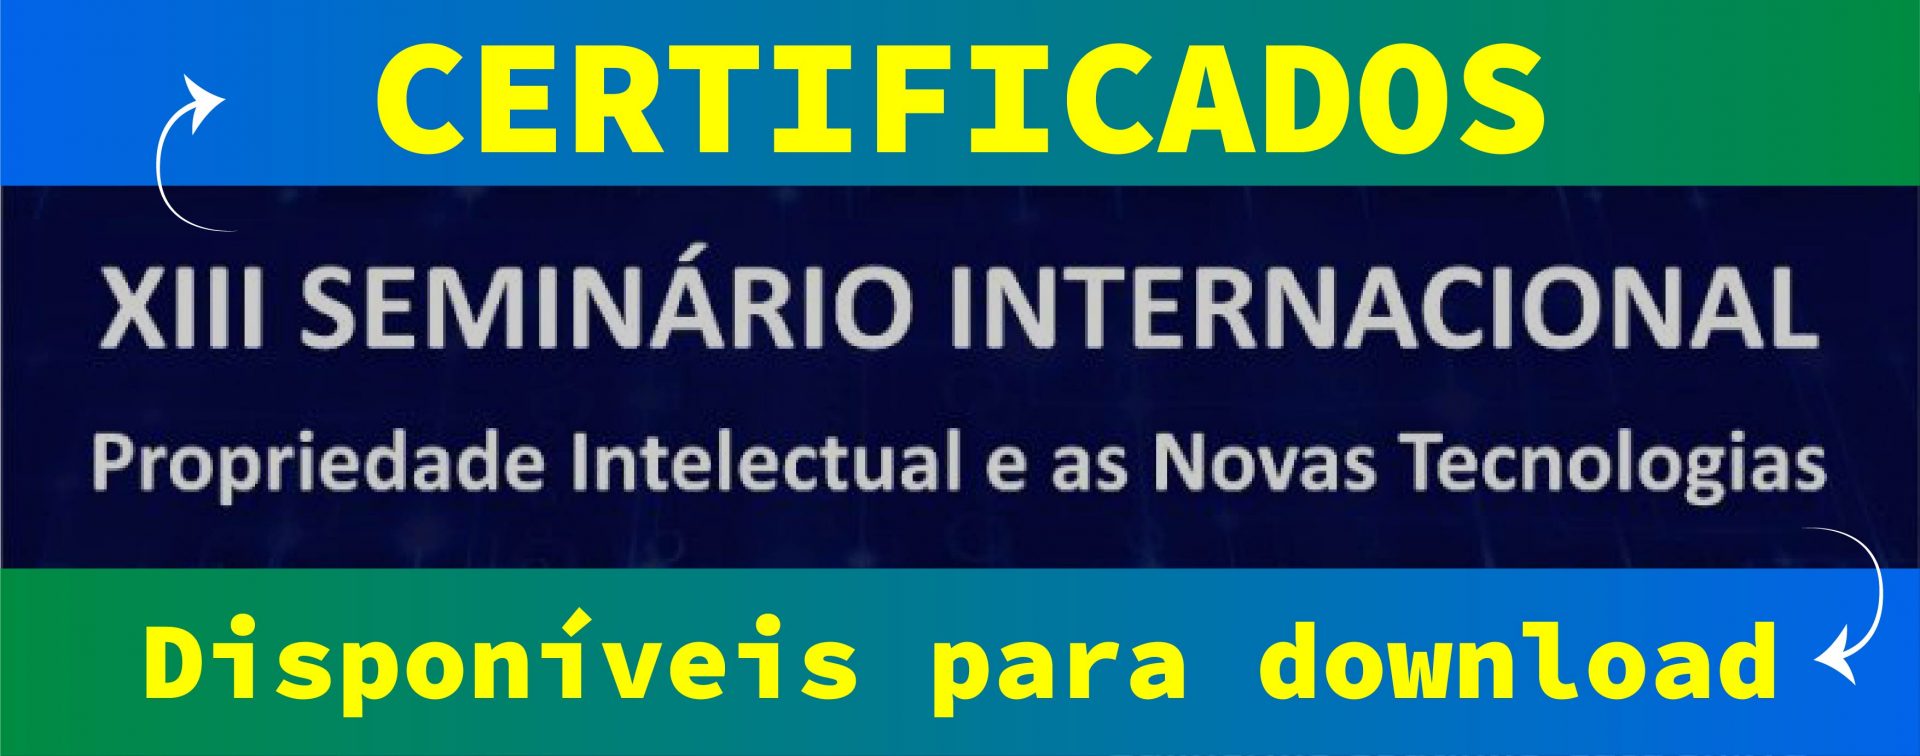 Certificados XIII SEMINÁRIO INTERNACIONAL DE PROPRIEDADE INTELECTUAL